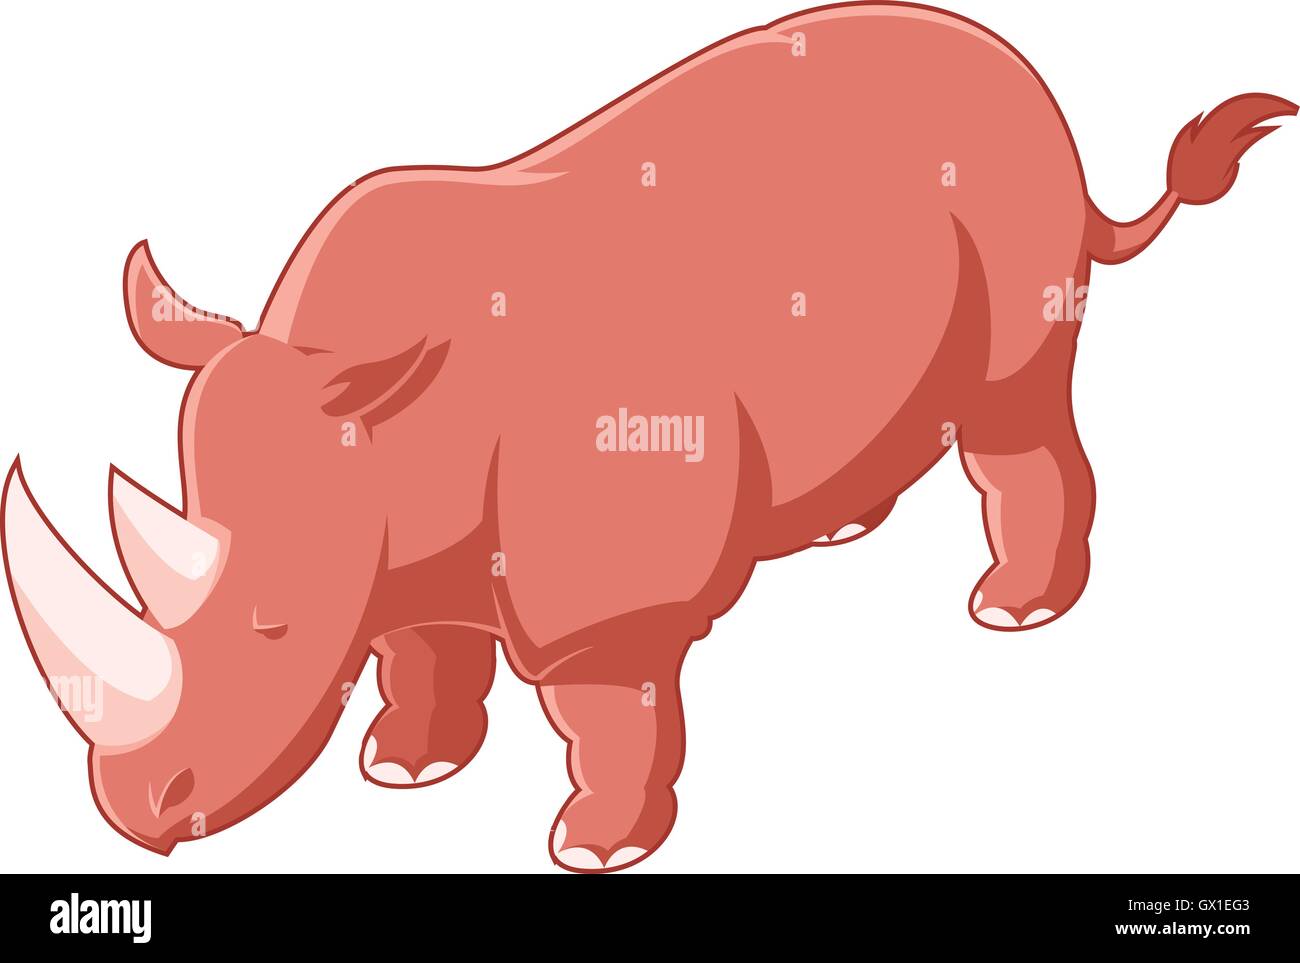 Rhinoceros isometric icon Stock Vector